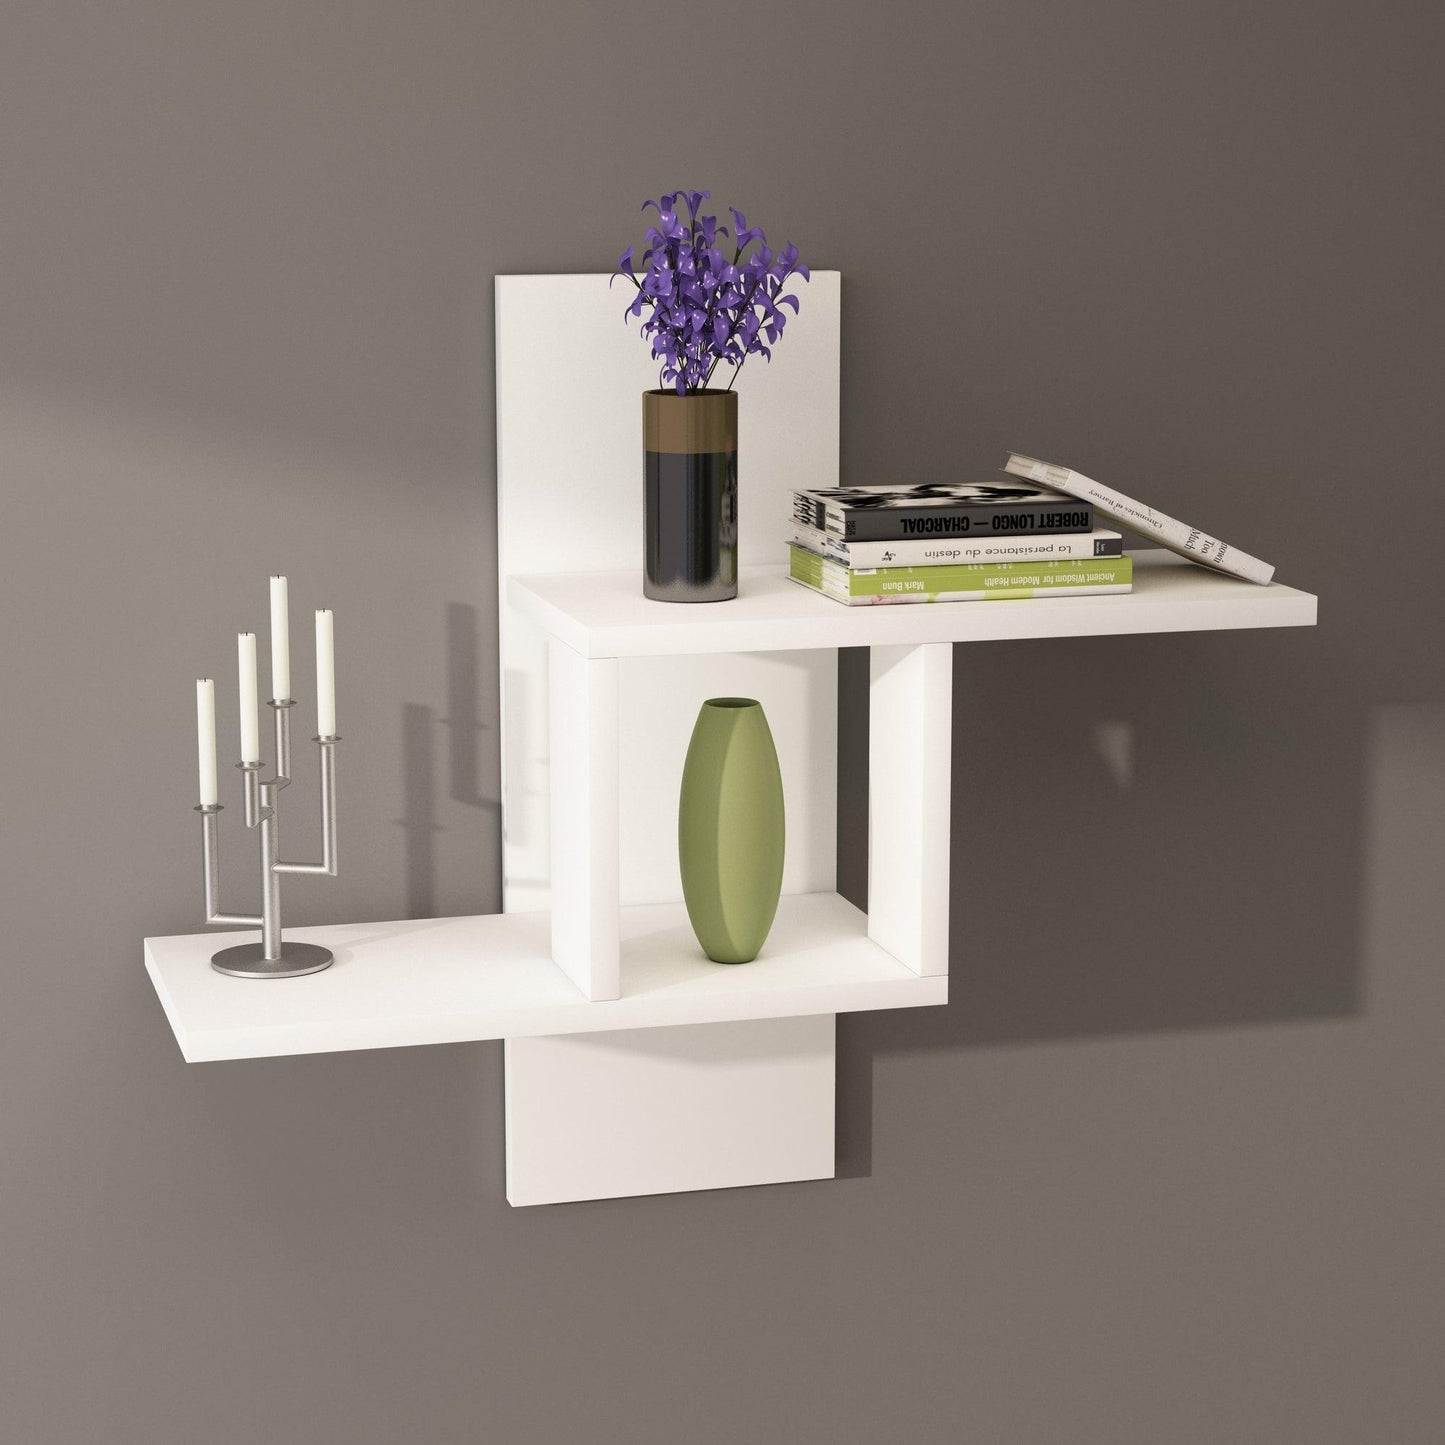 wall shelf, floating shelf, wall decor, shelf, shelving unit, wall mounted shelf